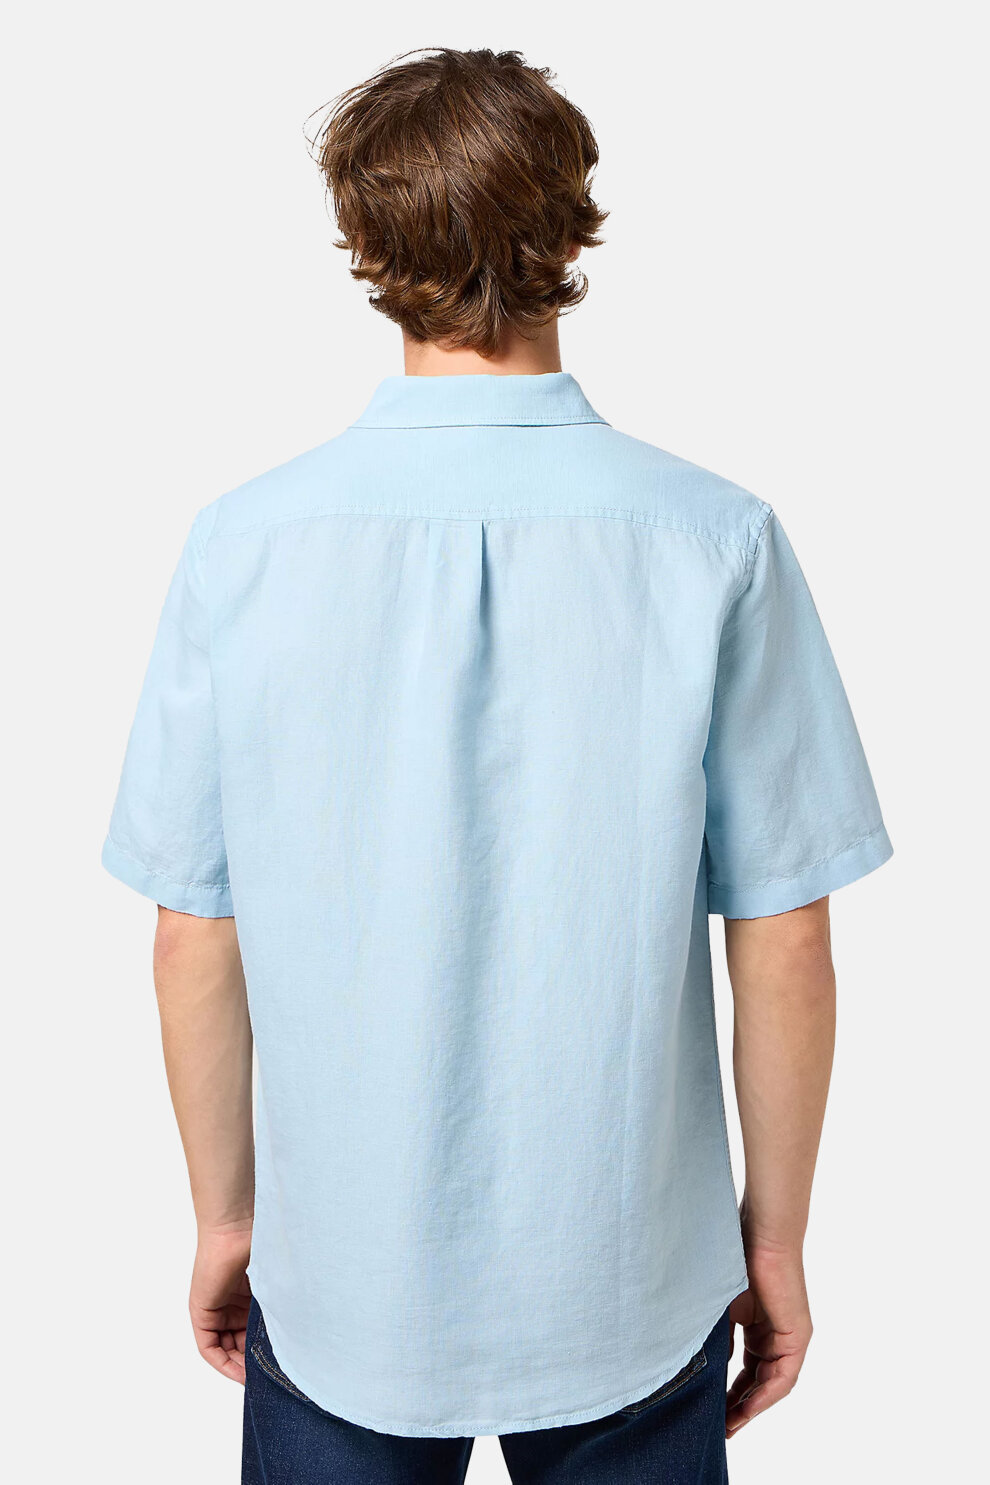 MUŠKARCI - Košulje - Wrangler košulja - Kratki rukavi - Plava